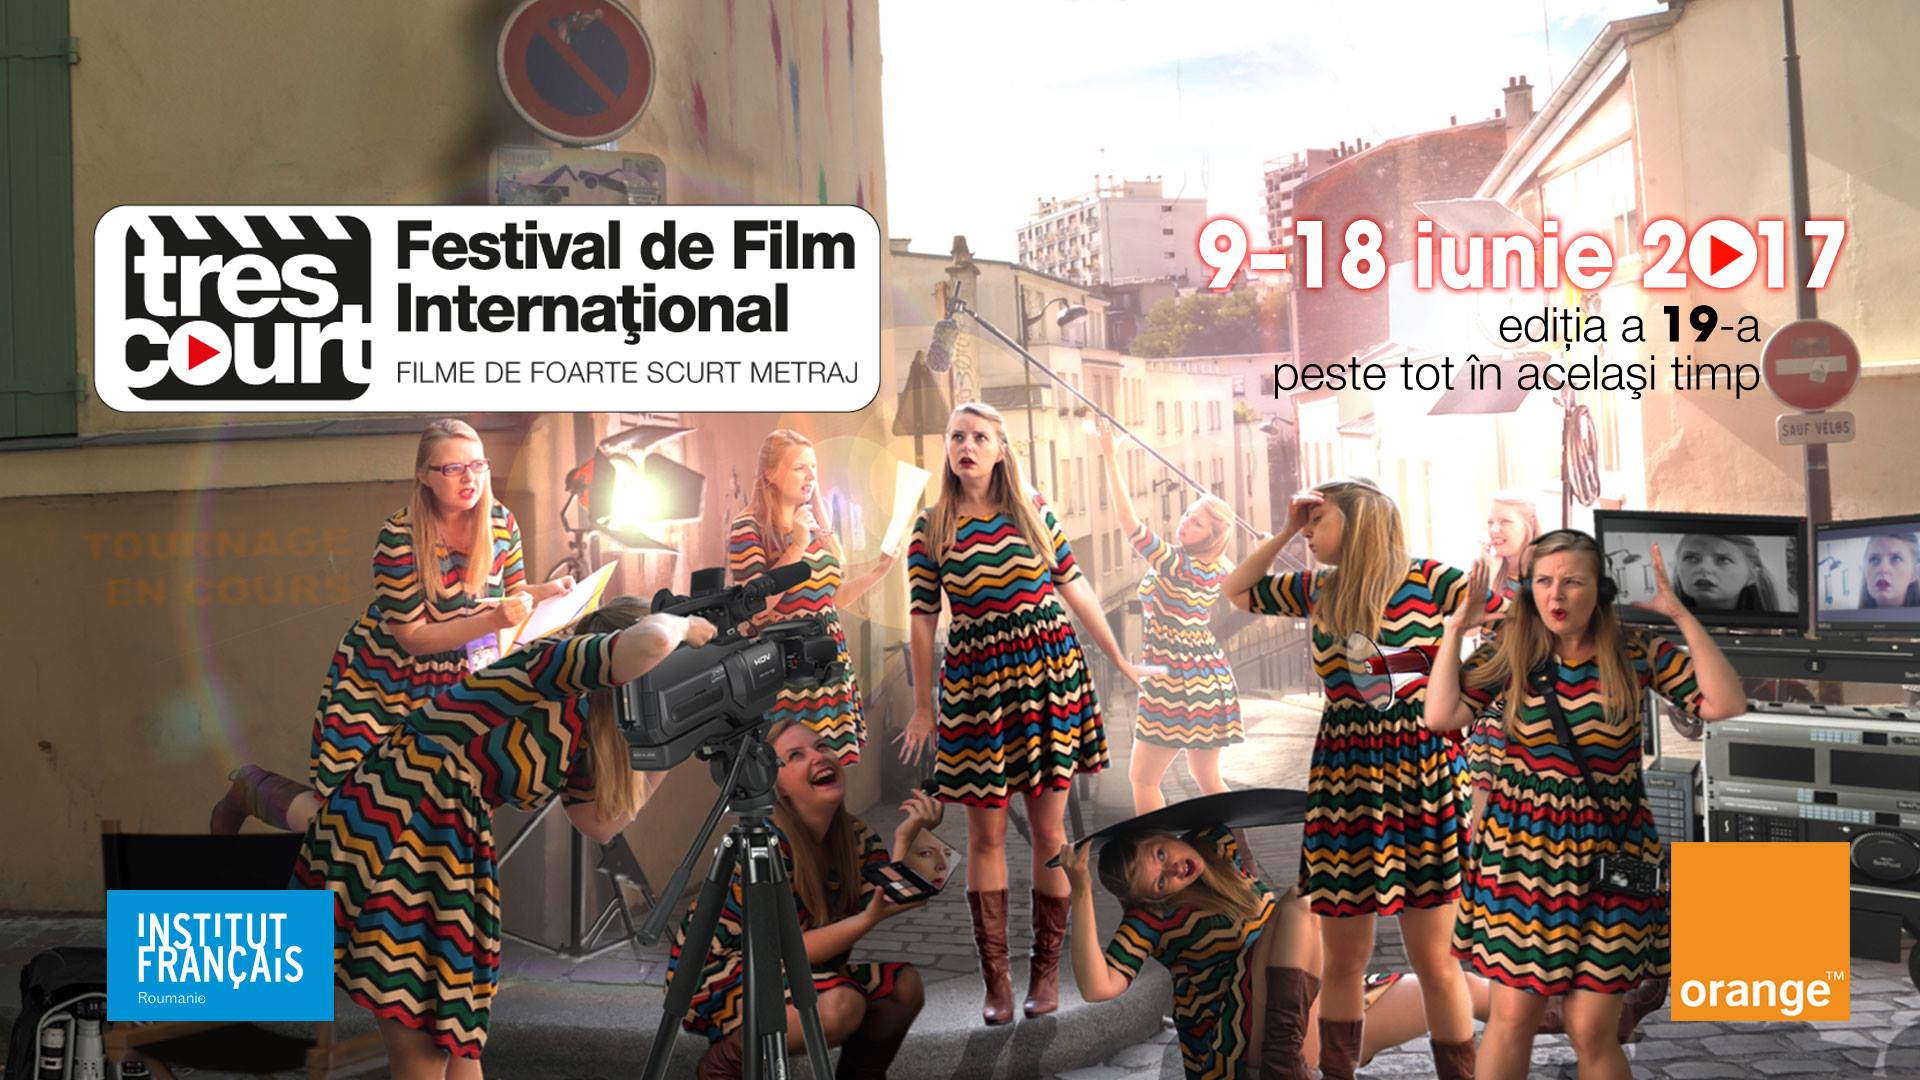 Festivalul International de foarte scurt metraj Très Courts, in acest weekend, la Cinema Victoria din Cluj